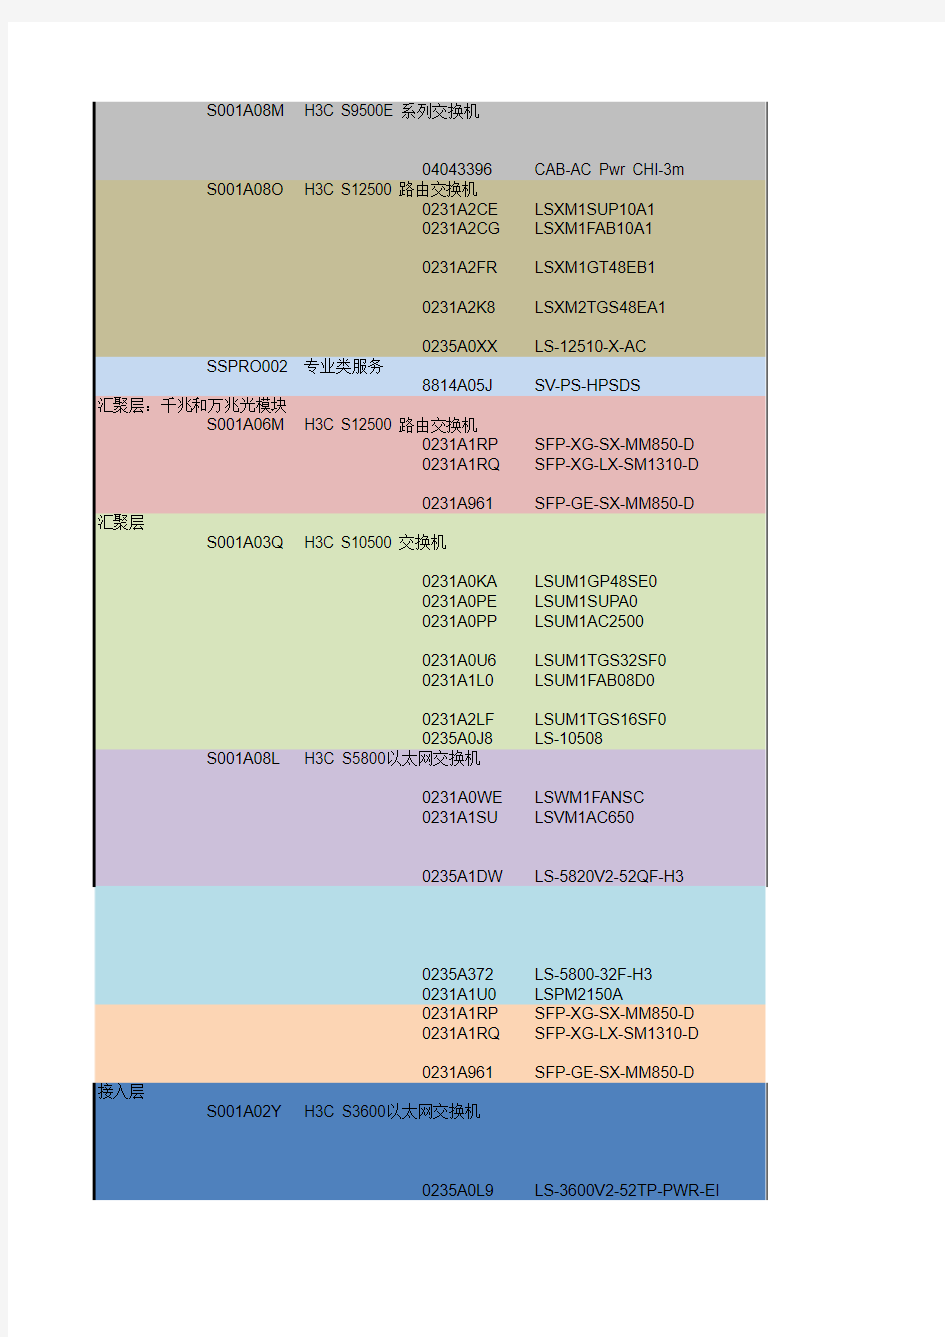 海南省肿瘤医院网络设备配置报价清单(项目部已审)20150512